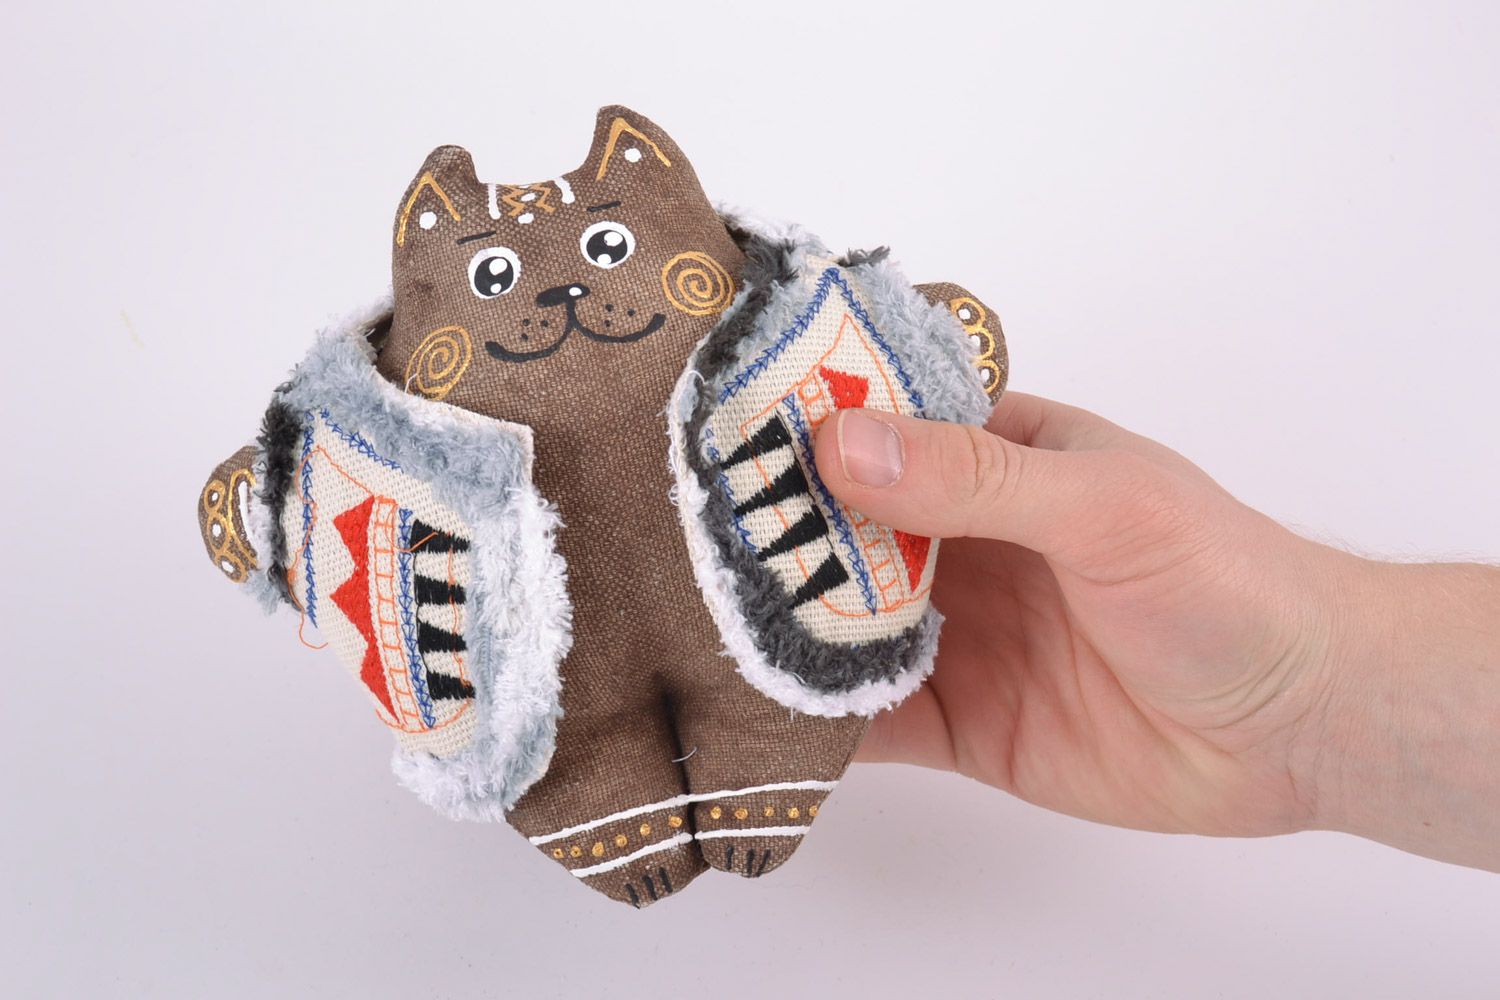 Petite peluche décorative en tissu peinte faite main chat en gilet originale photo 4